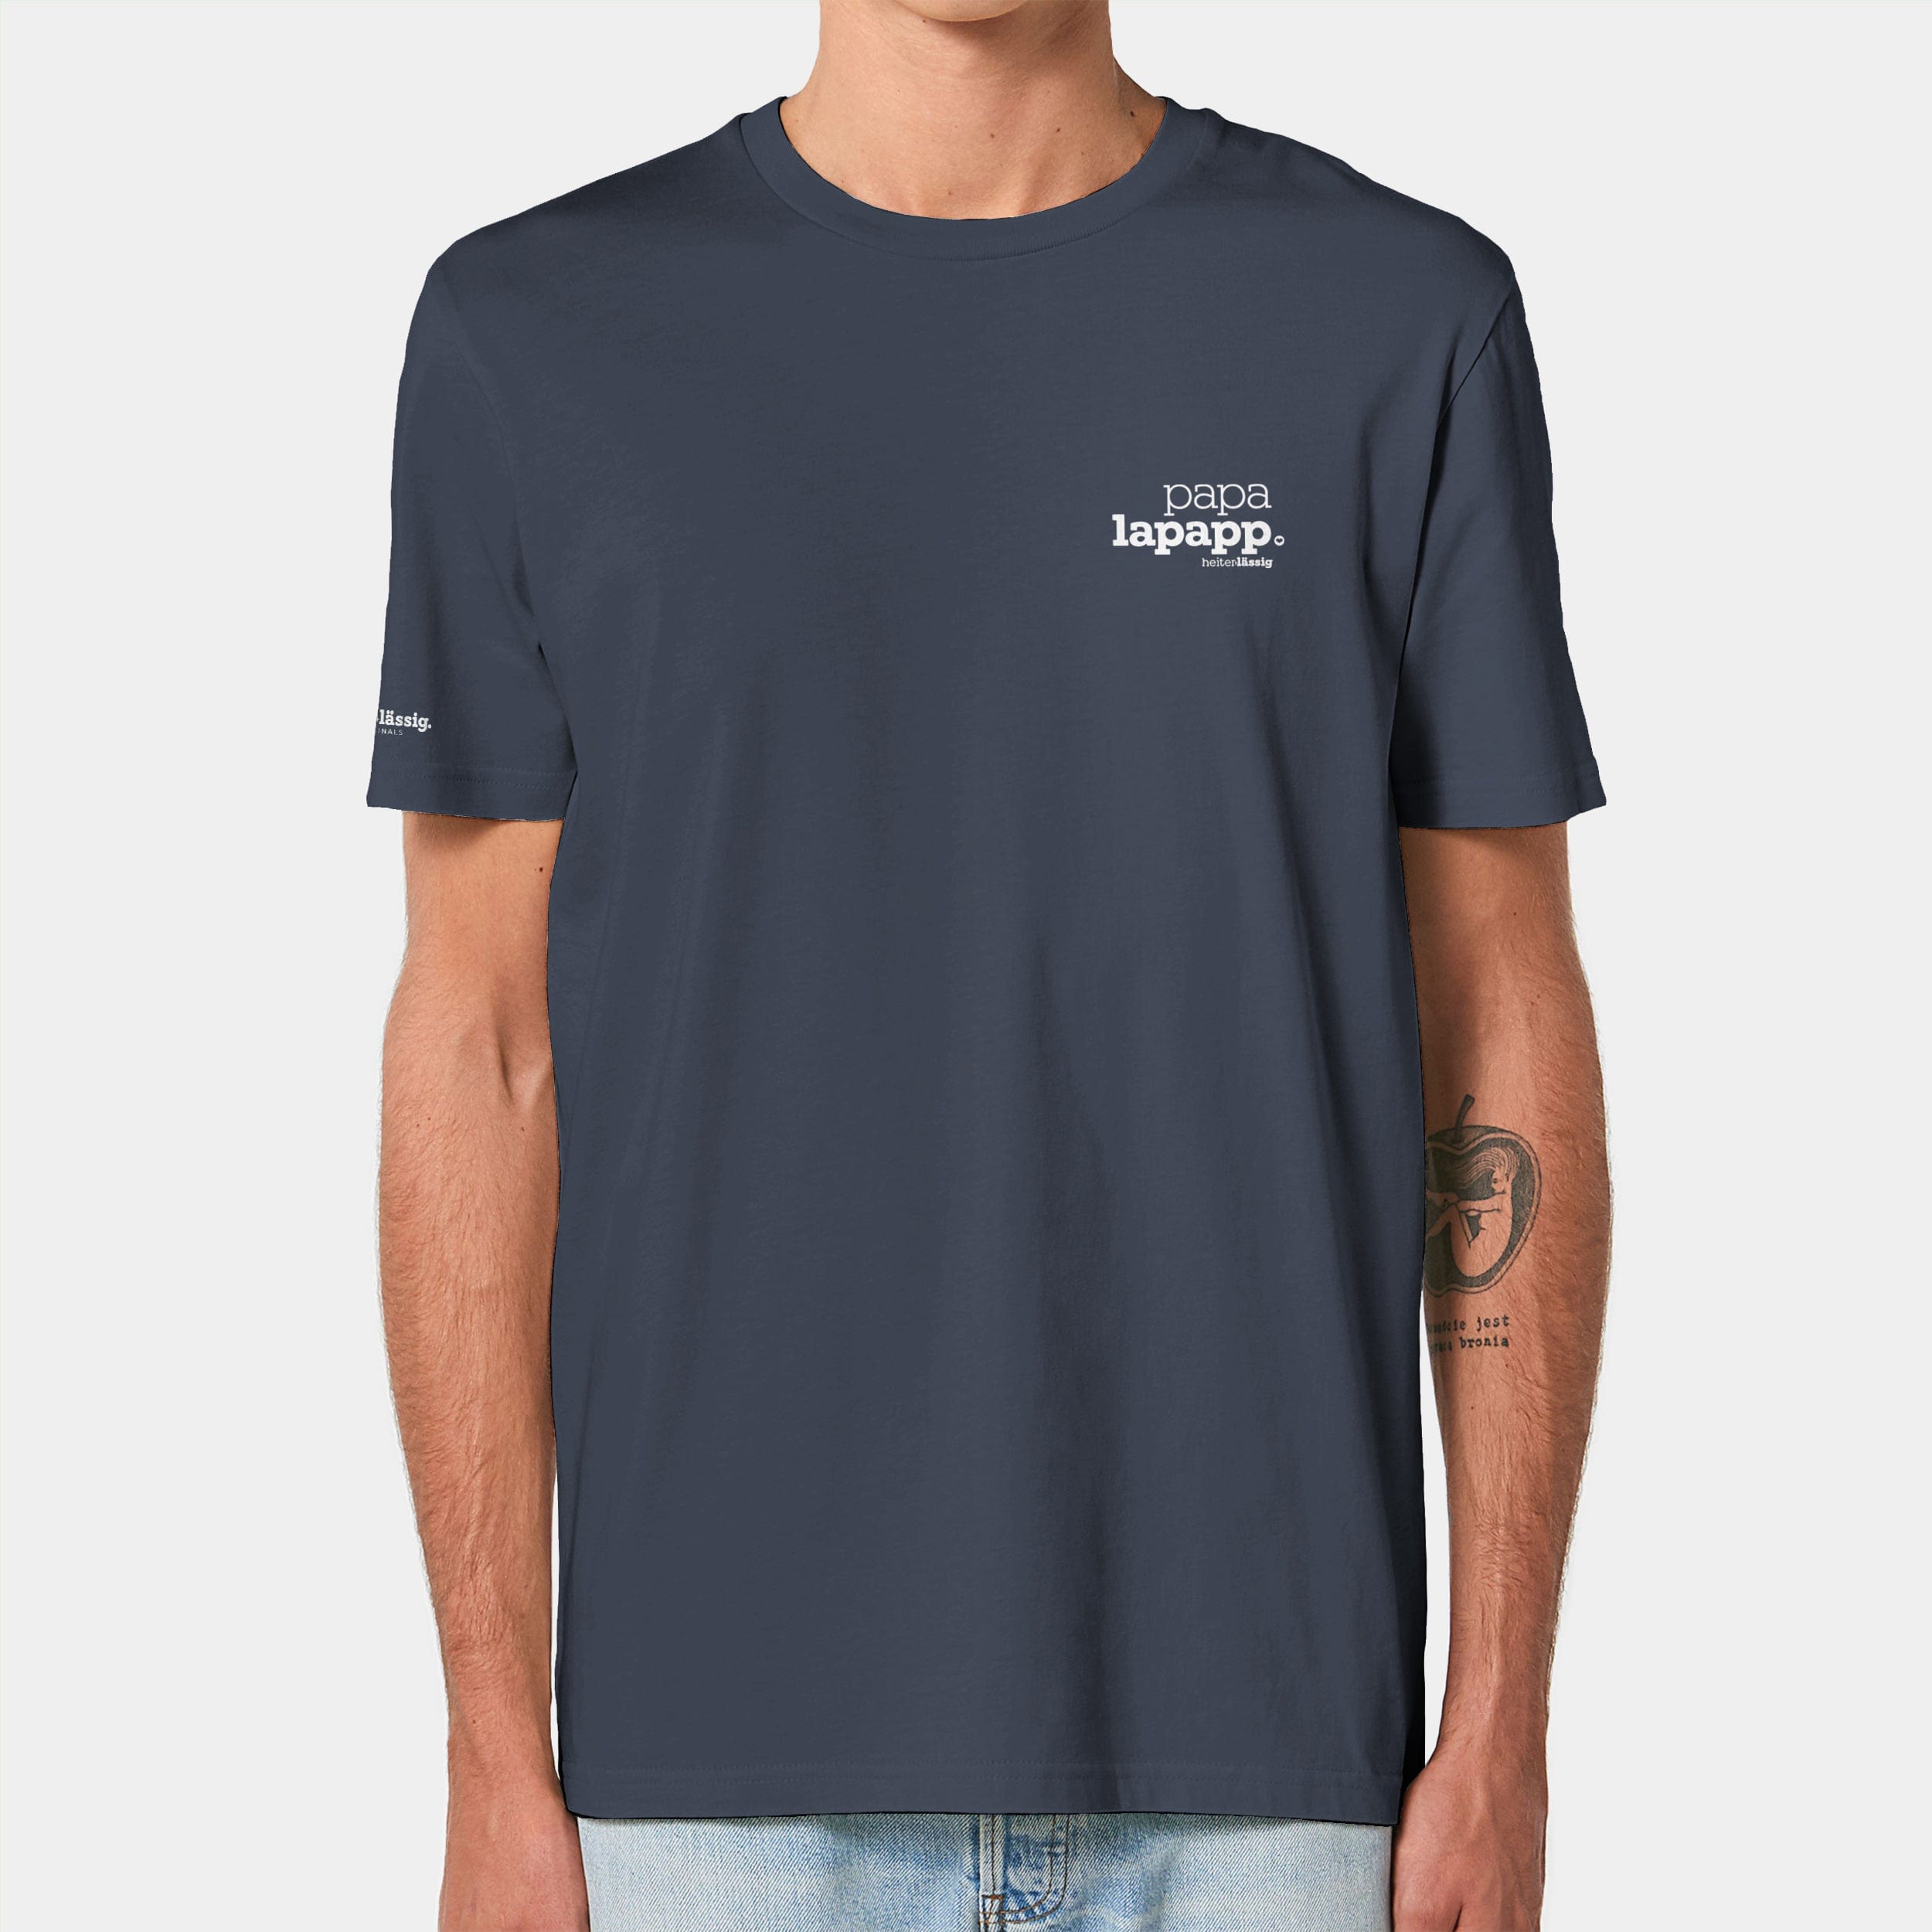 HEITER & LÄSSIG T-Shirt ORIGINAL "papalapapp" XXS / india ink grey - aus nachhaltiger und fairer Produktion